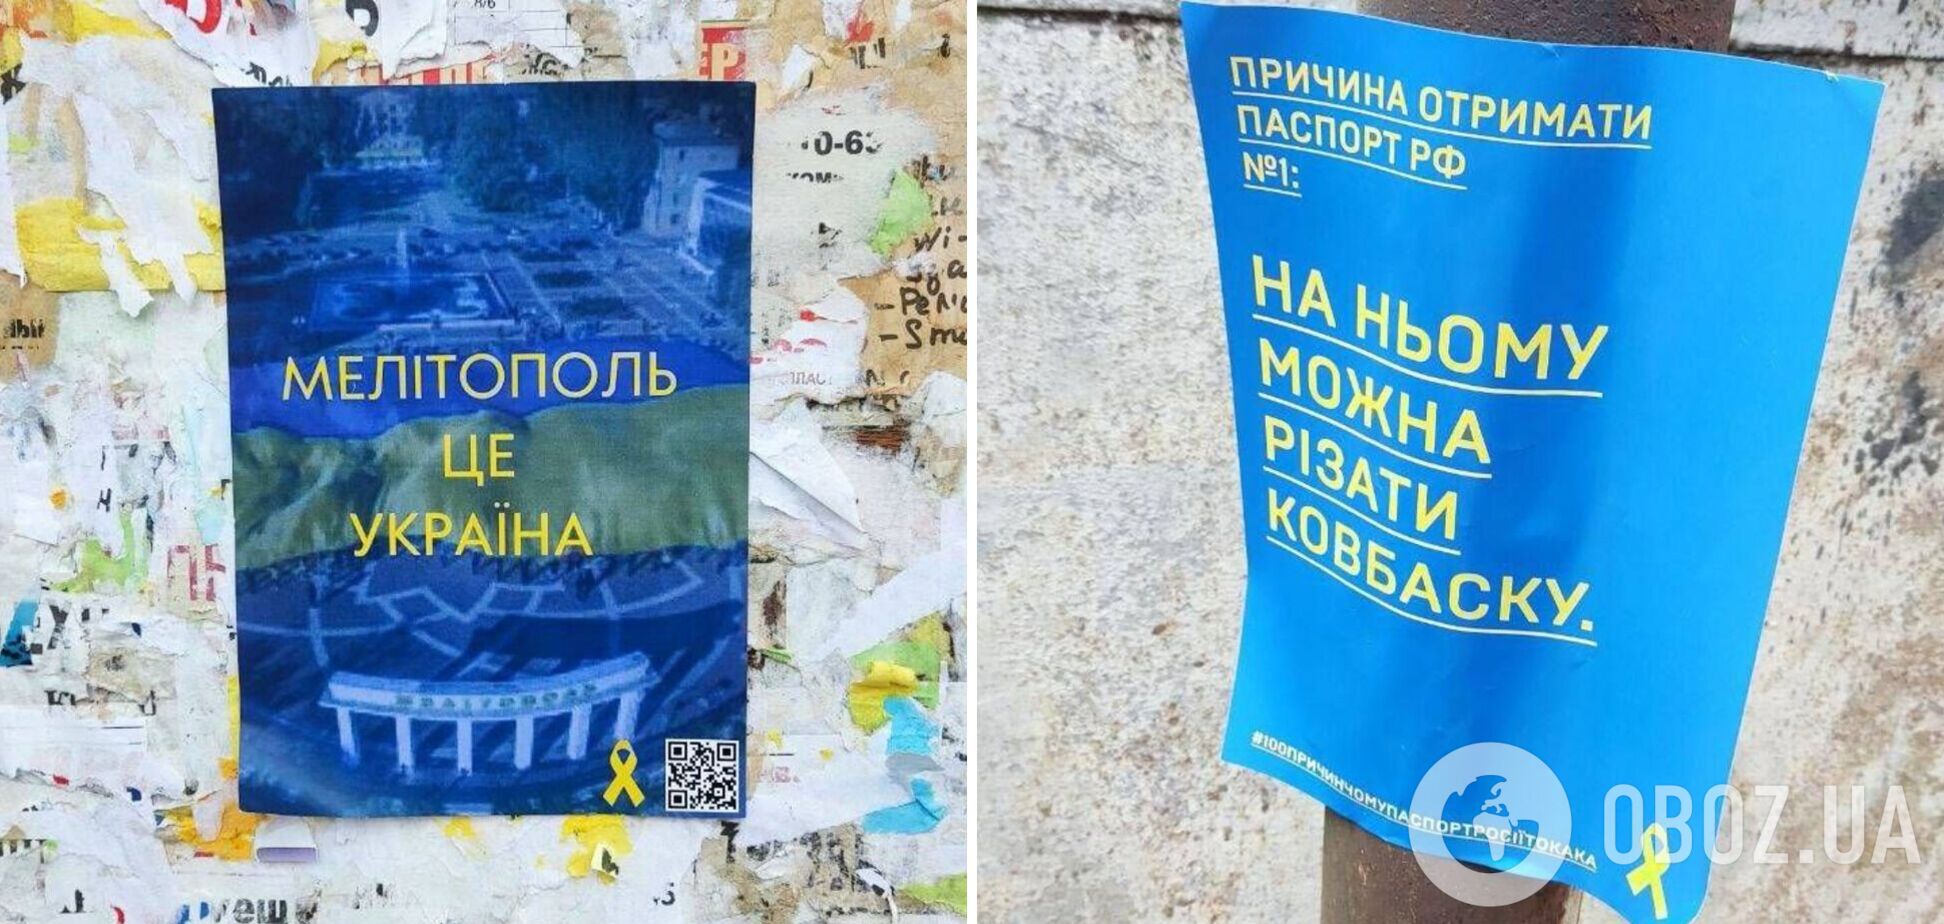 'На нем можно резать колбаску': в оккупированном Мелитополе высмеяли 'достоинства' российского паспорта. Фото